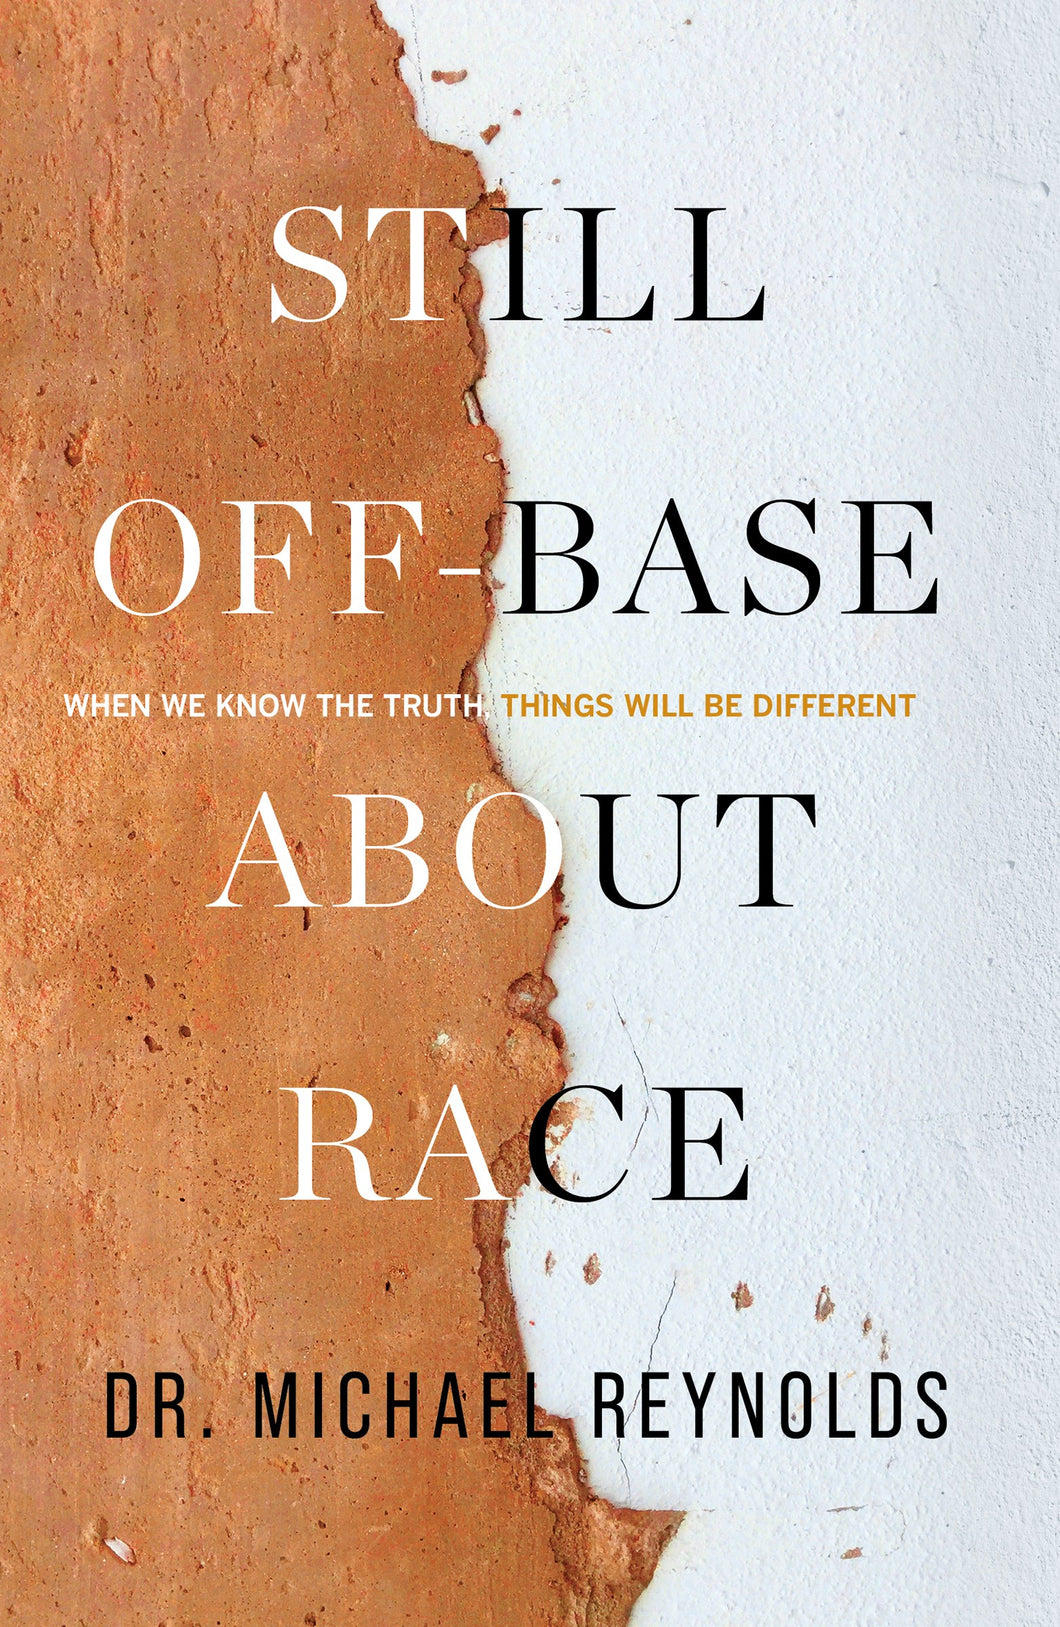 Still Off-Base About Race